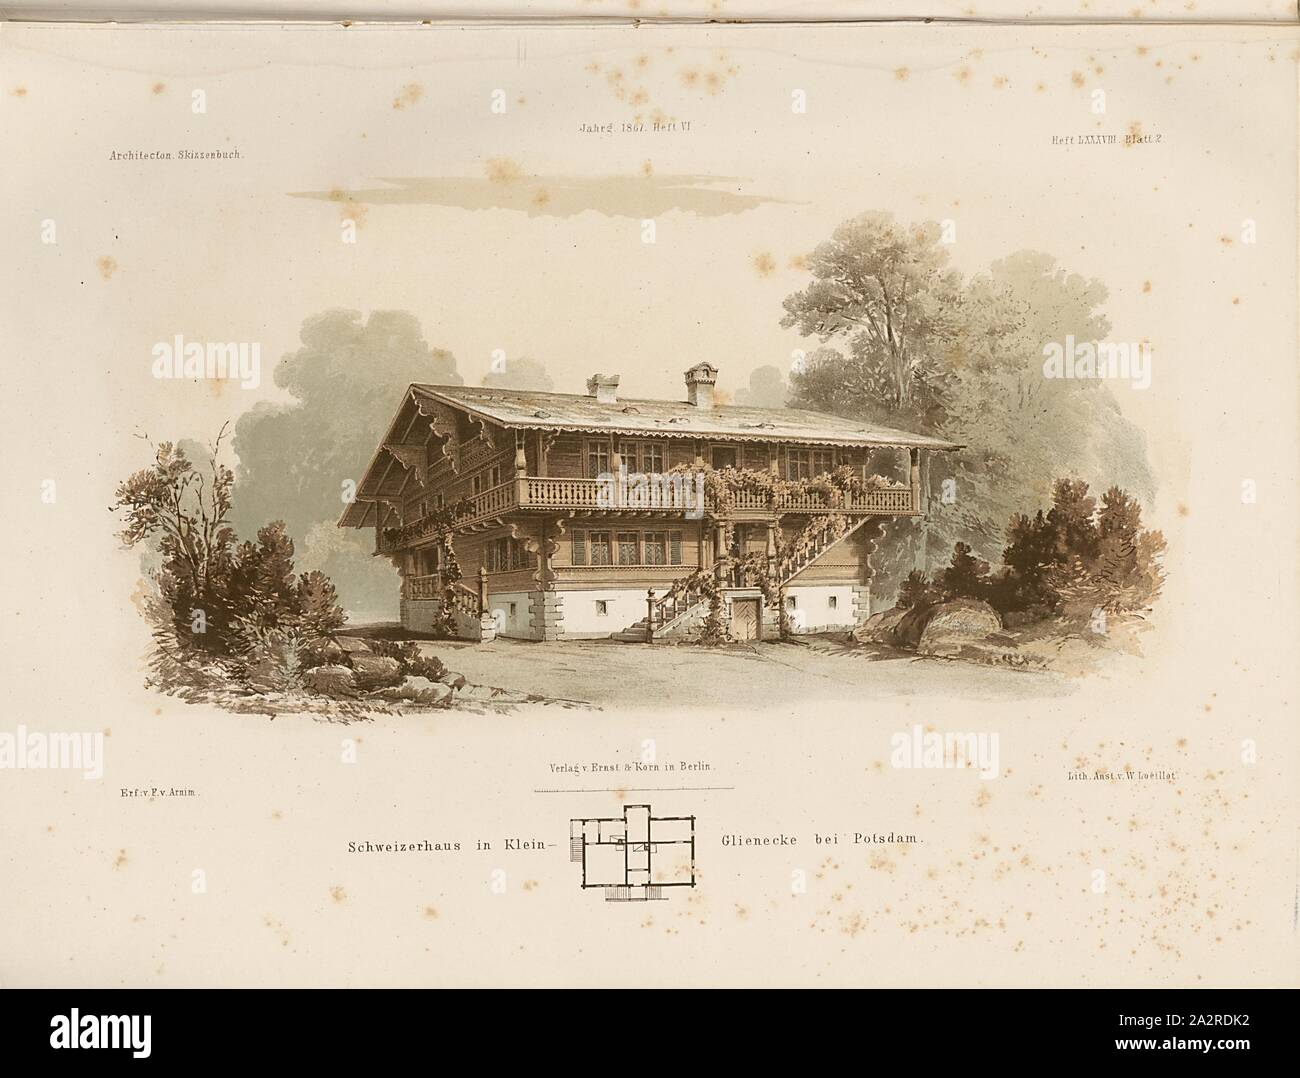 Swiss House in Klein-Glienecke vicino a Potsdam, Swiss casa in legno, firmato: fer., V, E. V., Arnim, Lith., V, W. Loeillot; Publisher v., Ernst & Korn, PROBLEMA LXXXVIII, foglio 2, Arnim, E. V. (Fer.); Loeillot, W. (Lith.); Ernst & Korn (Verl.), 1867, Architektonisches Skizzen-Buch: eine Sammlung enthaltend Landhäuser, Villen, ländliche Gebäude, Gartenhäuser, Gartenverzierungen, städtische Wohngebäude, Dekorationen viscerale Räume, Gitter, Erker, balkone, Blumenfenster, Brunnen, Springbrunnen, Hofgebäude ... und andere kleine Baulichkeiten, welche zur Verschönerung baulicher Anlagen dienen und a Berlino Foto Stock